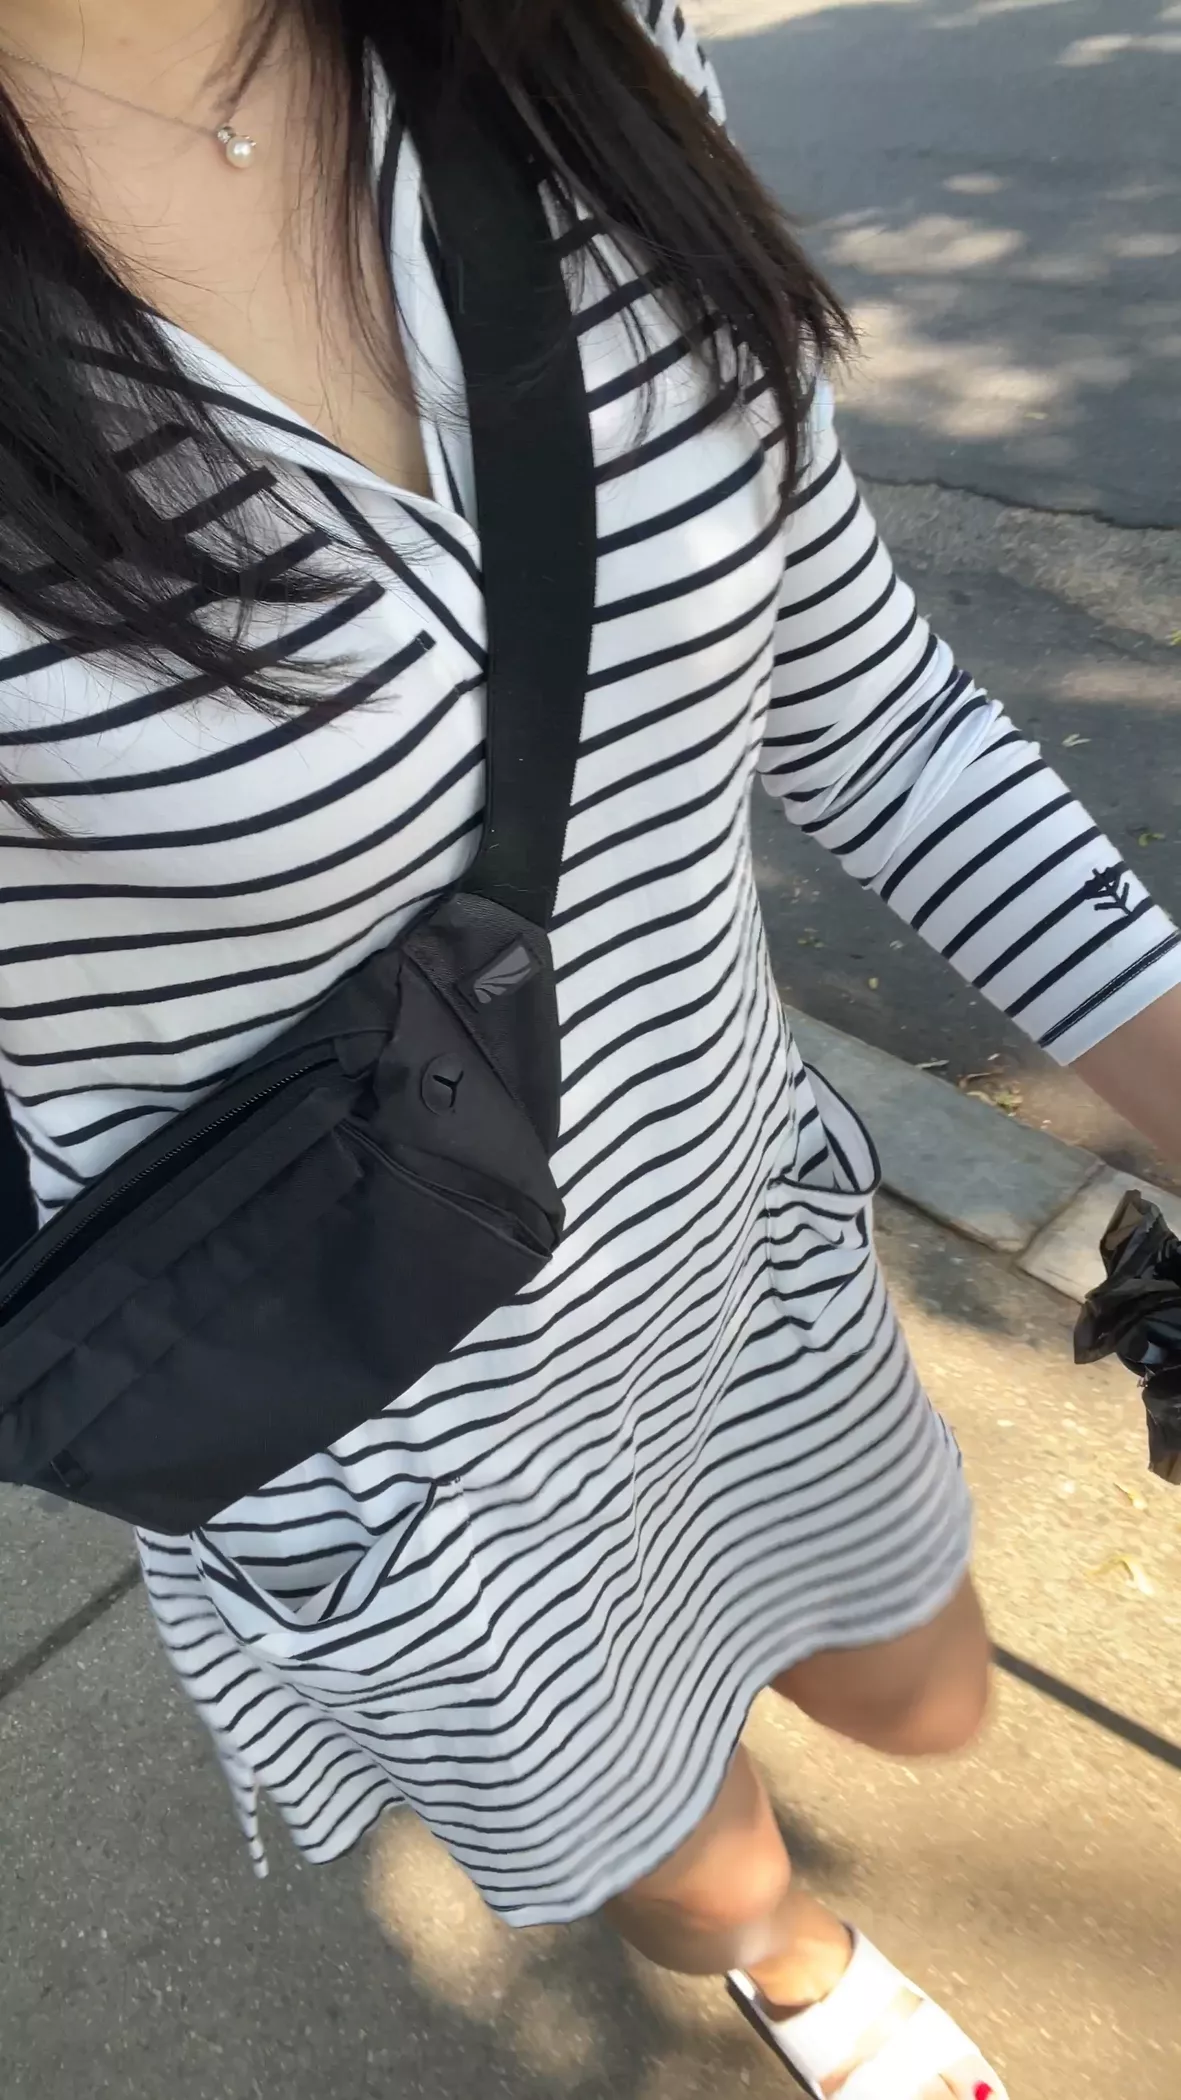 Effortless summer look 🖤🖤 wearing @cuyana mini double loop bag